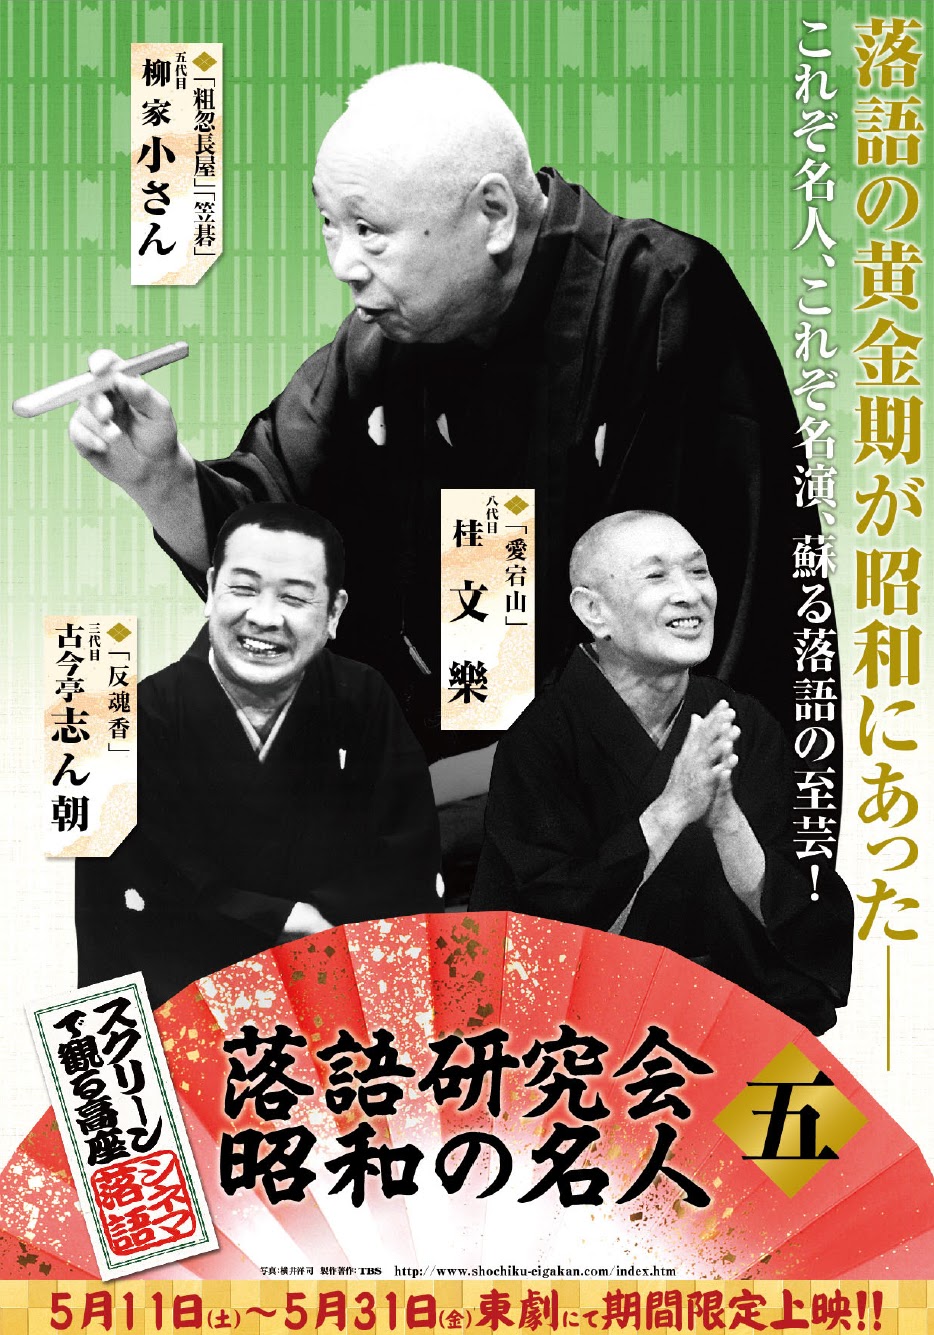 スクリーンで観る高座シネマ落語 「落語研究会 昭和の名人五」公開